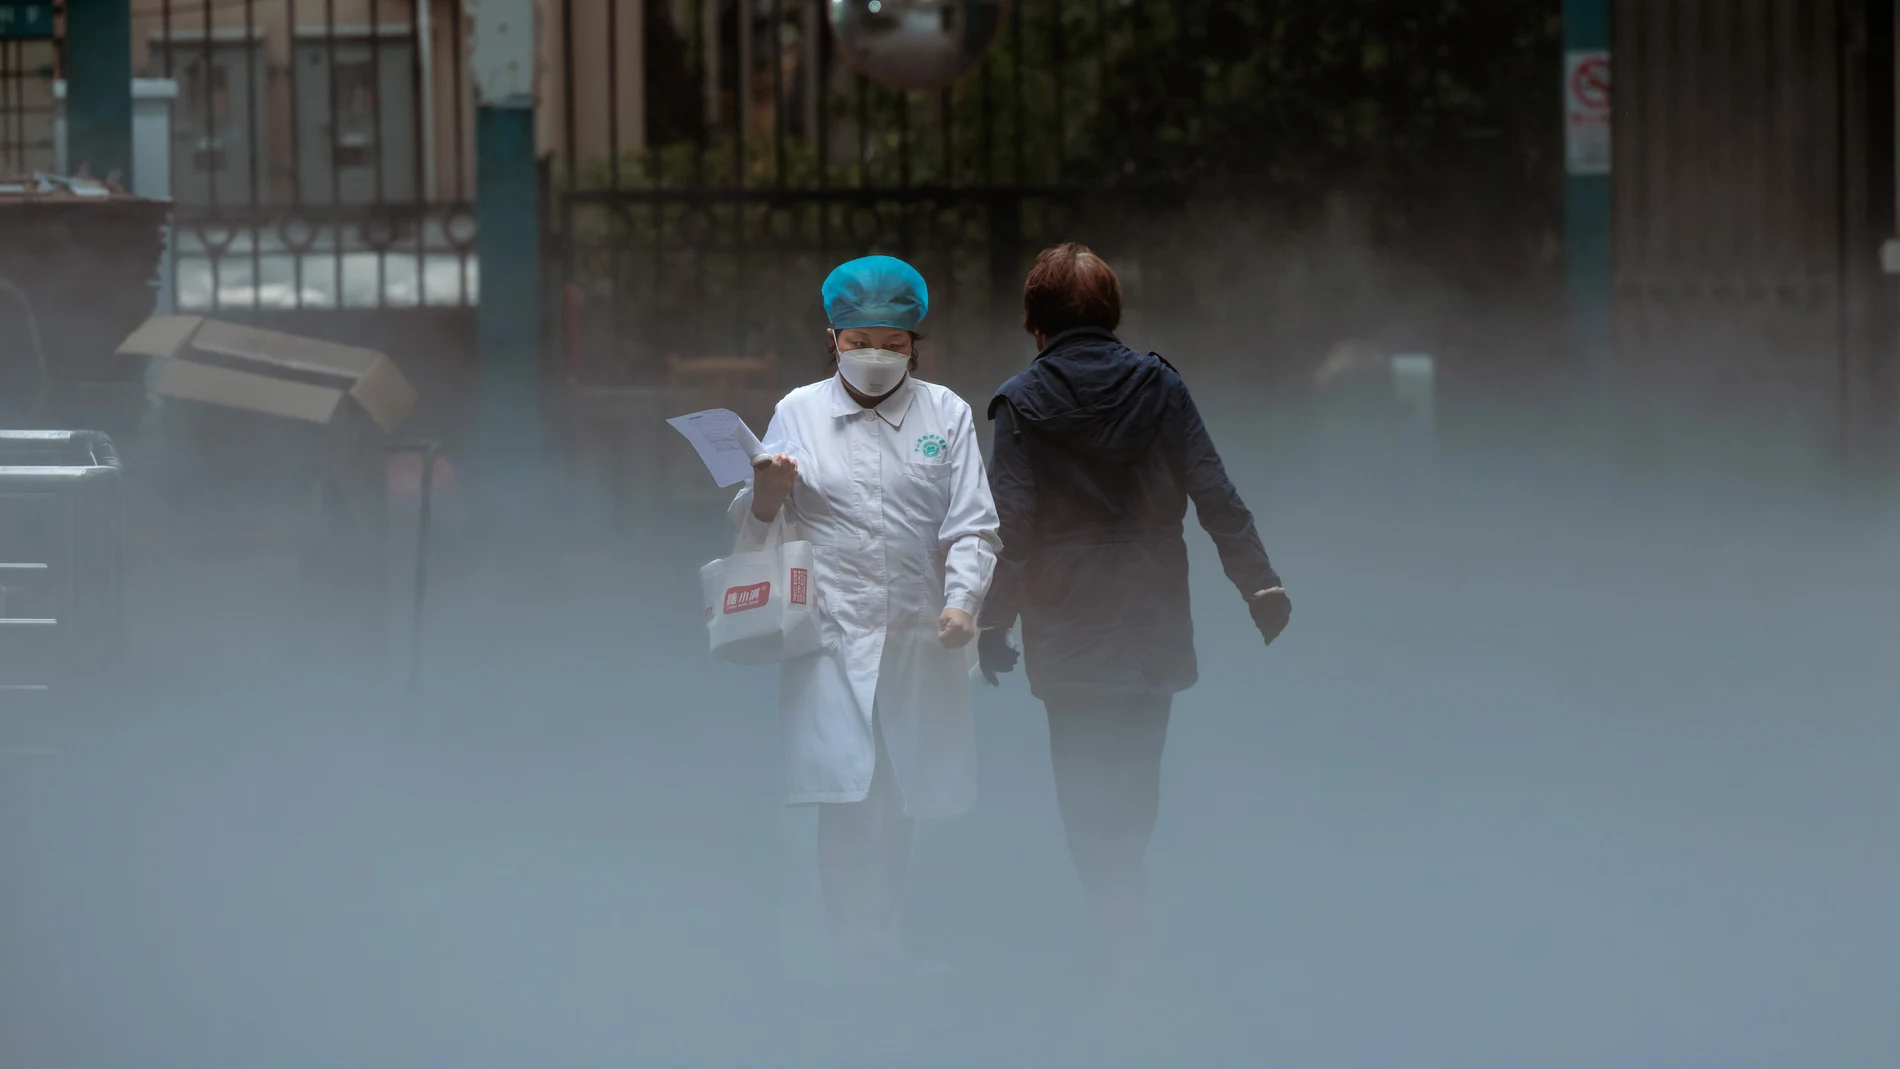 Un personal médico sale de la parte mortuoria de un hospital mientras otra persona acaba de entrar en las instalaciones en Shanghái